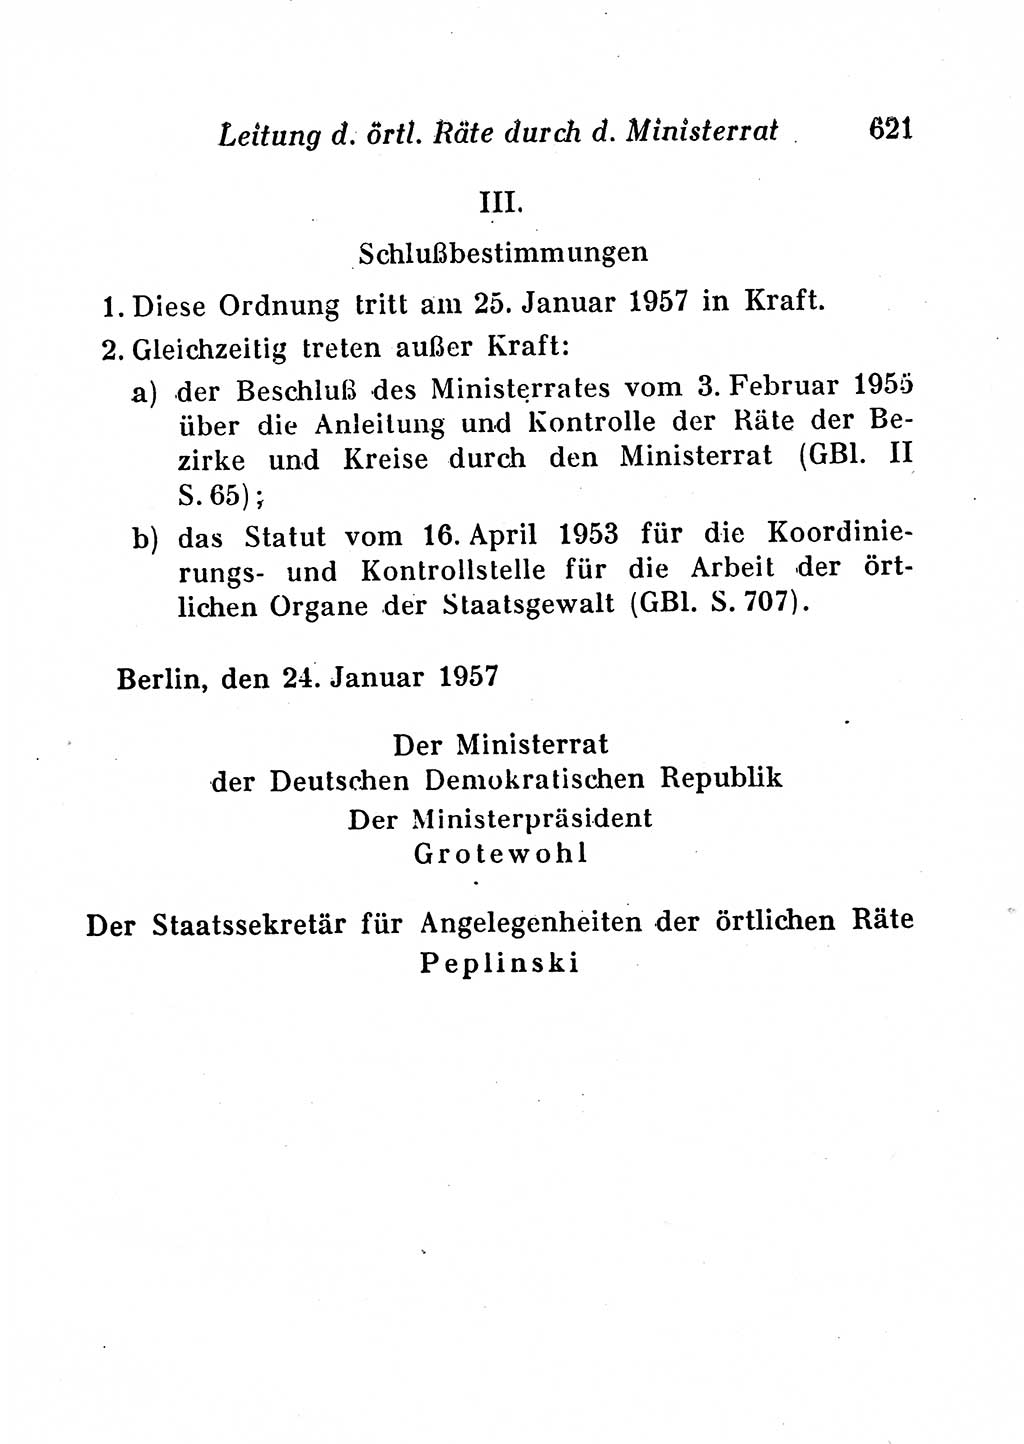 Staats- und verwaltungsrechtliche Gesetze der Deutschen Demokratischen Republik (DDR) 1958, Seite 621 (StVerwR Ges. DDR 1958, S. 621)